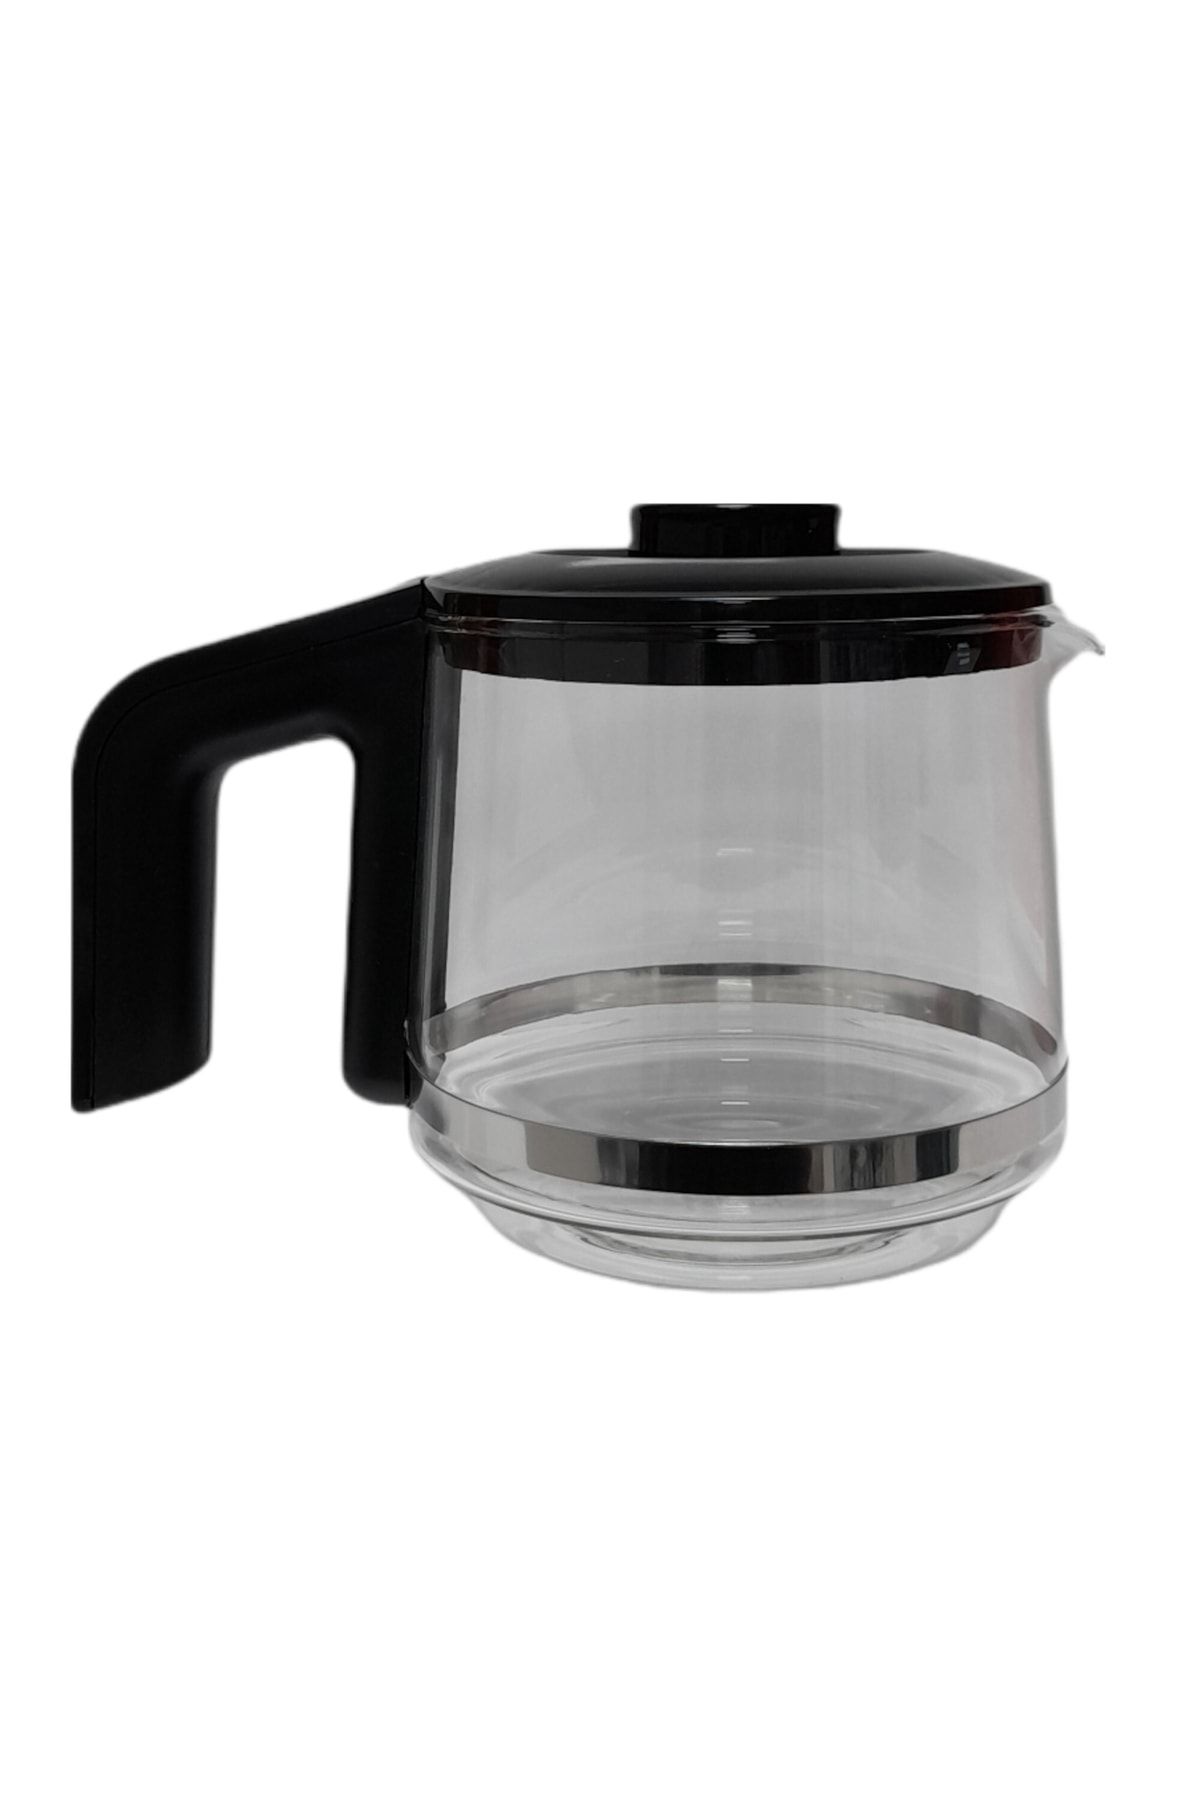 Fakir Tastea Çay Makinesi Için Uyumlu Cam Demlik (filtresiz)